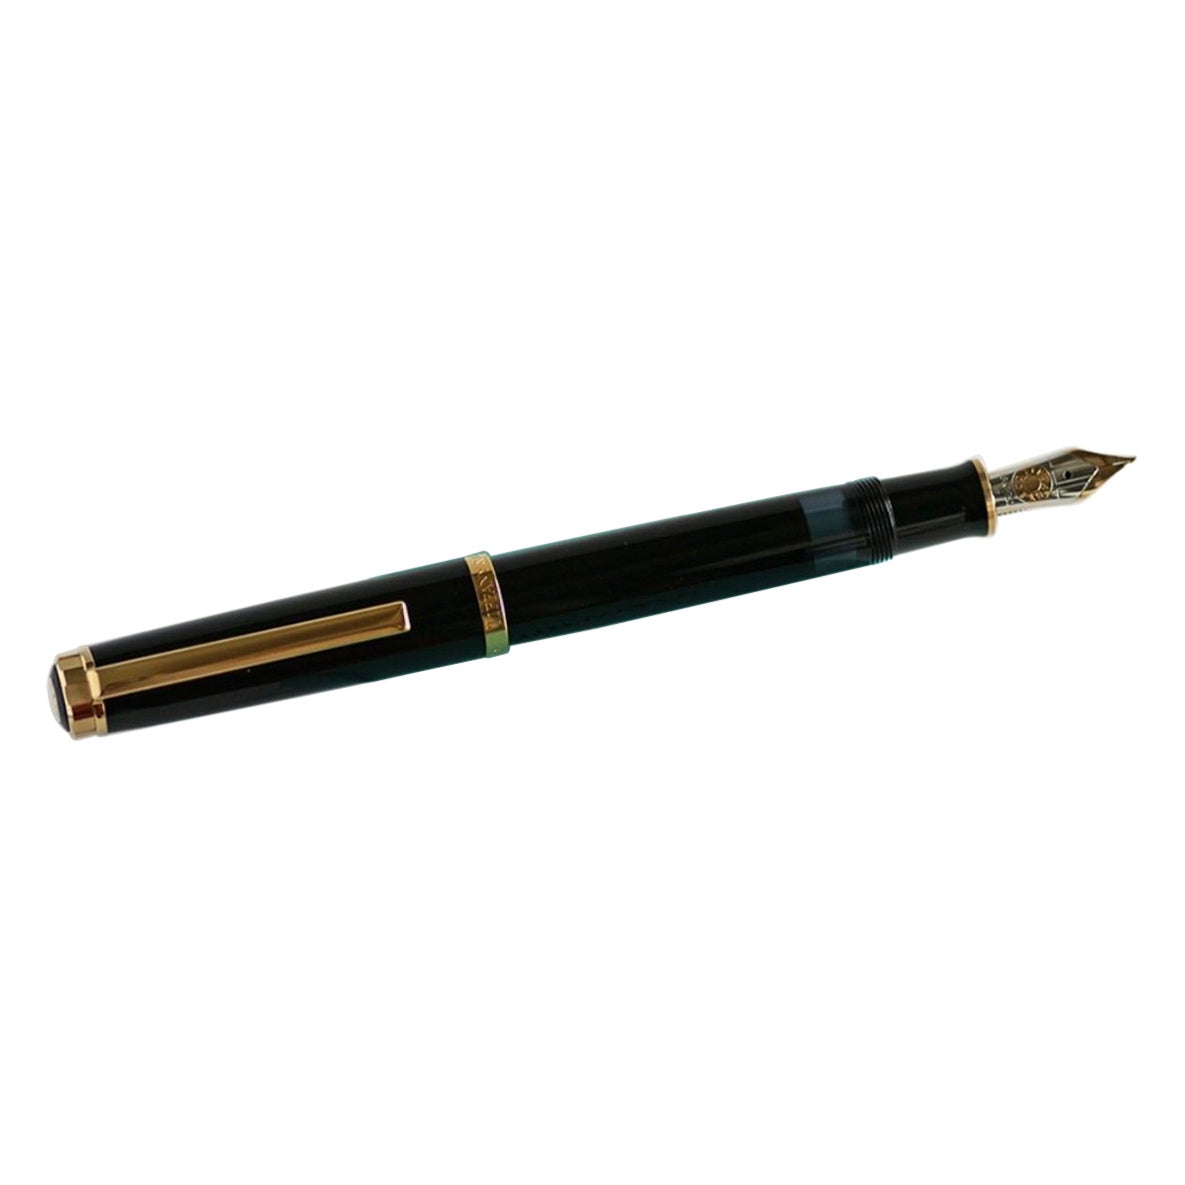 Tiffany & Co Atlas Executive Fountain Pen Gold Black 18k Nib w/Case Excellent